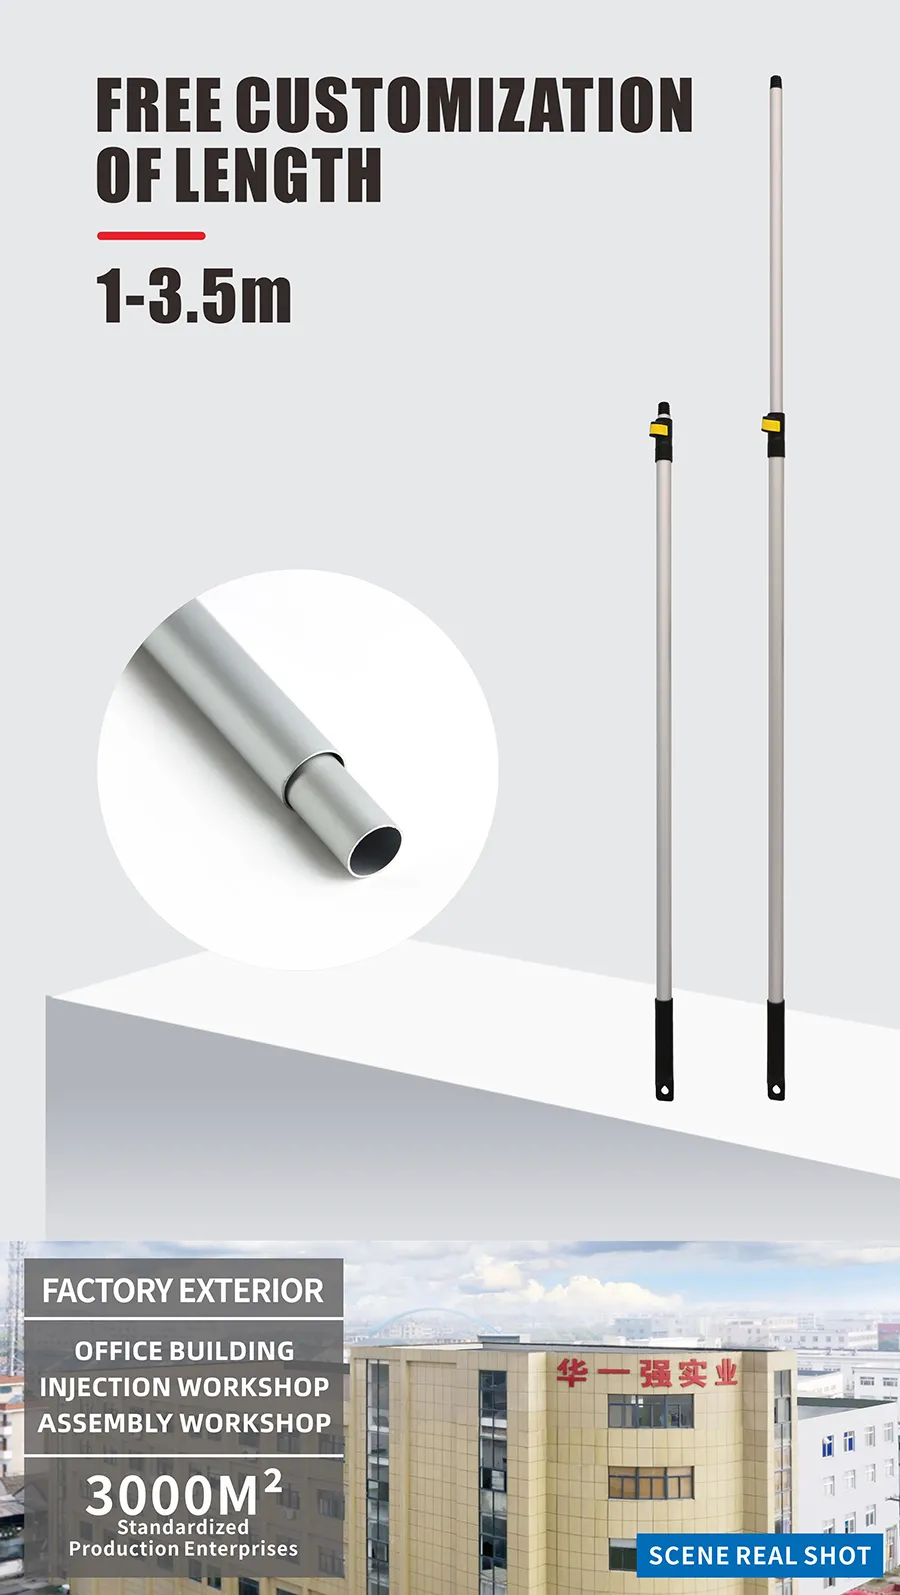 Telescopic Aluminum Extendable Handle Stick Clean Pole